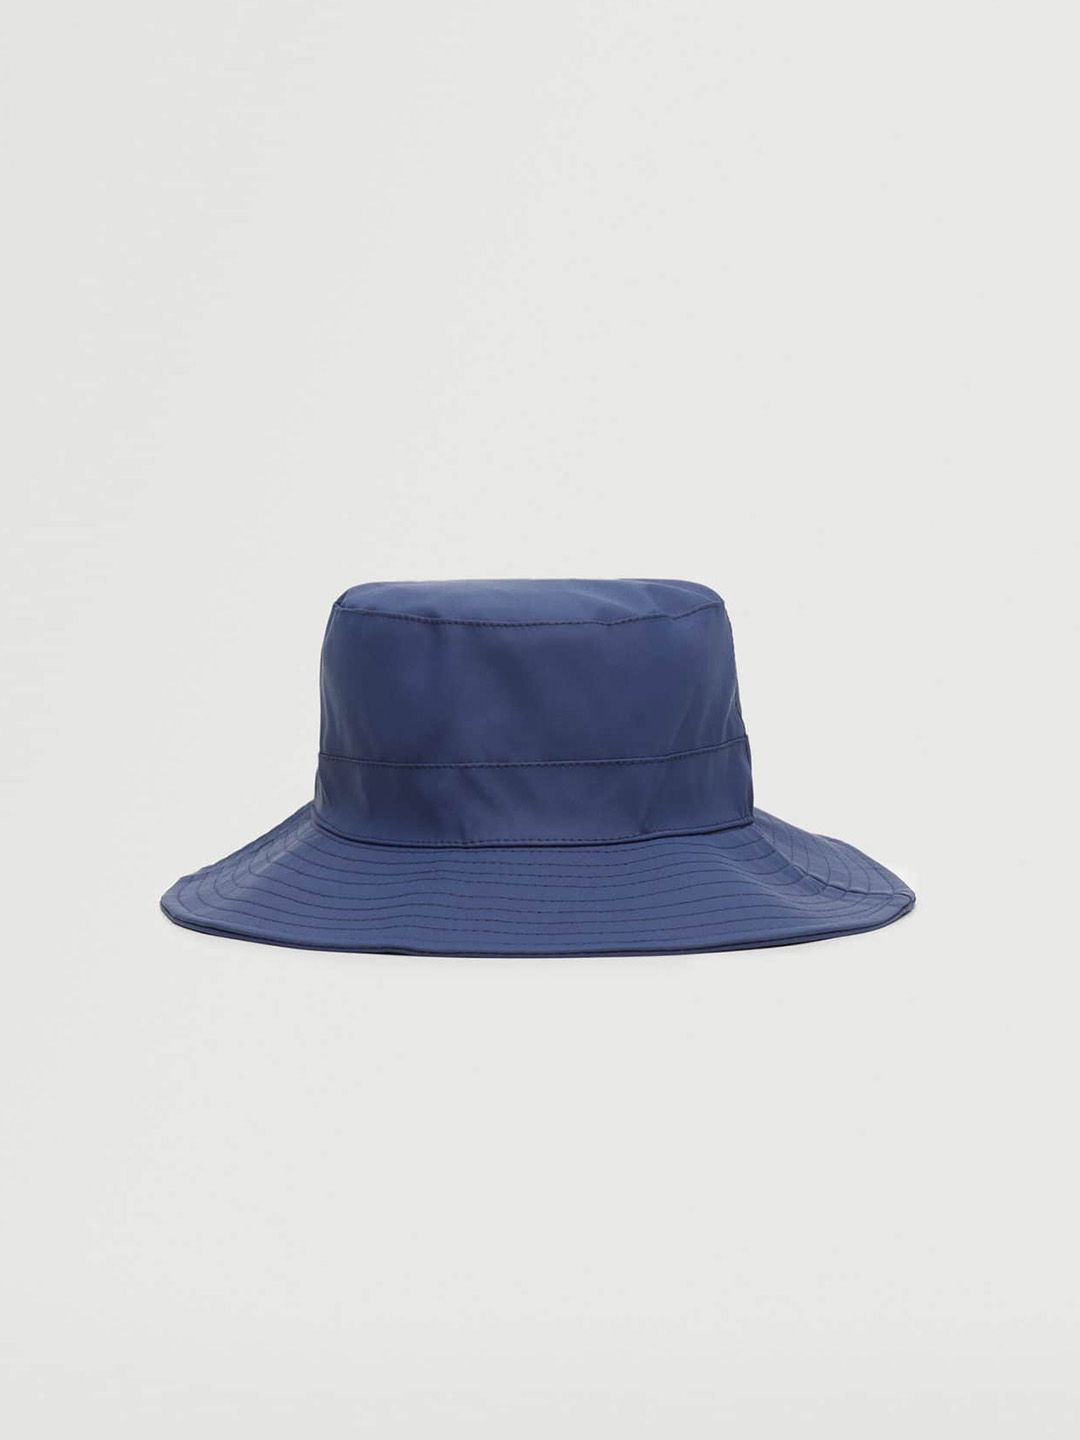 MANGO Women Navy Blue Solid Adjustable Bucket Hat Price in India